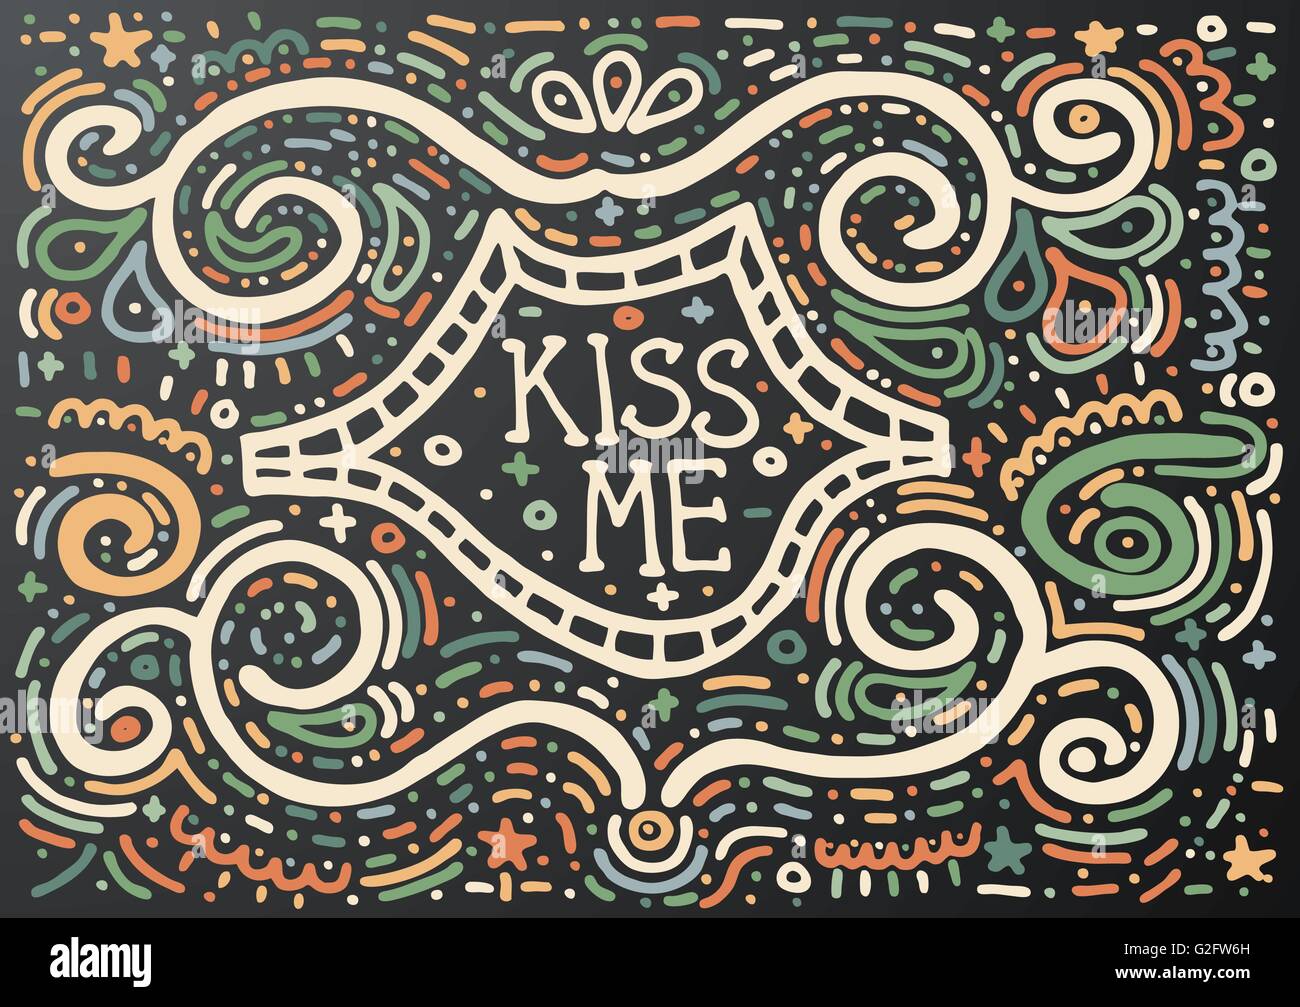 Kiss me. Vintage dibujados a mano con impresión de texto de esquema decorativo y los labios. Vintage de fondo. Ilustración vectorial. Ilustración del Vector